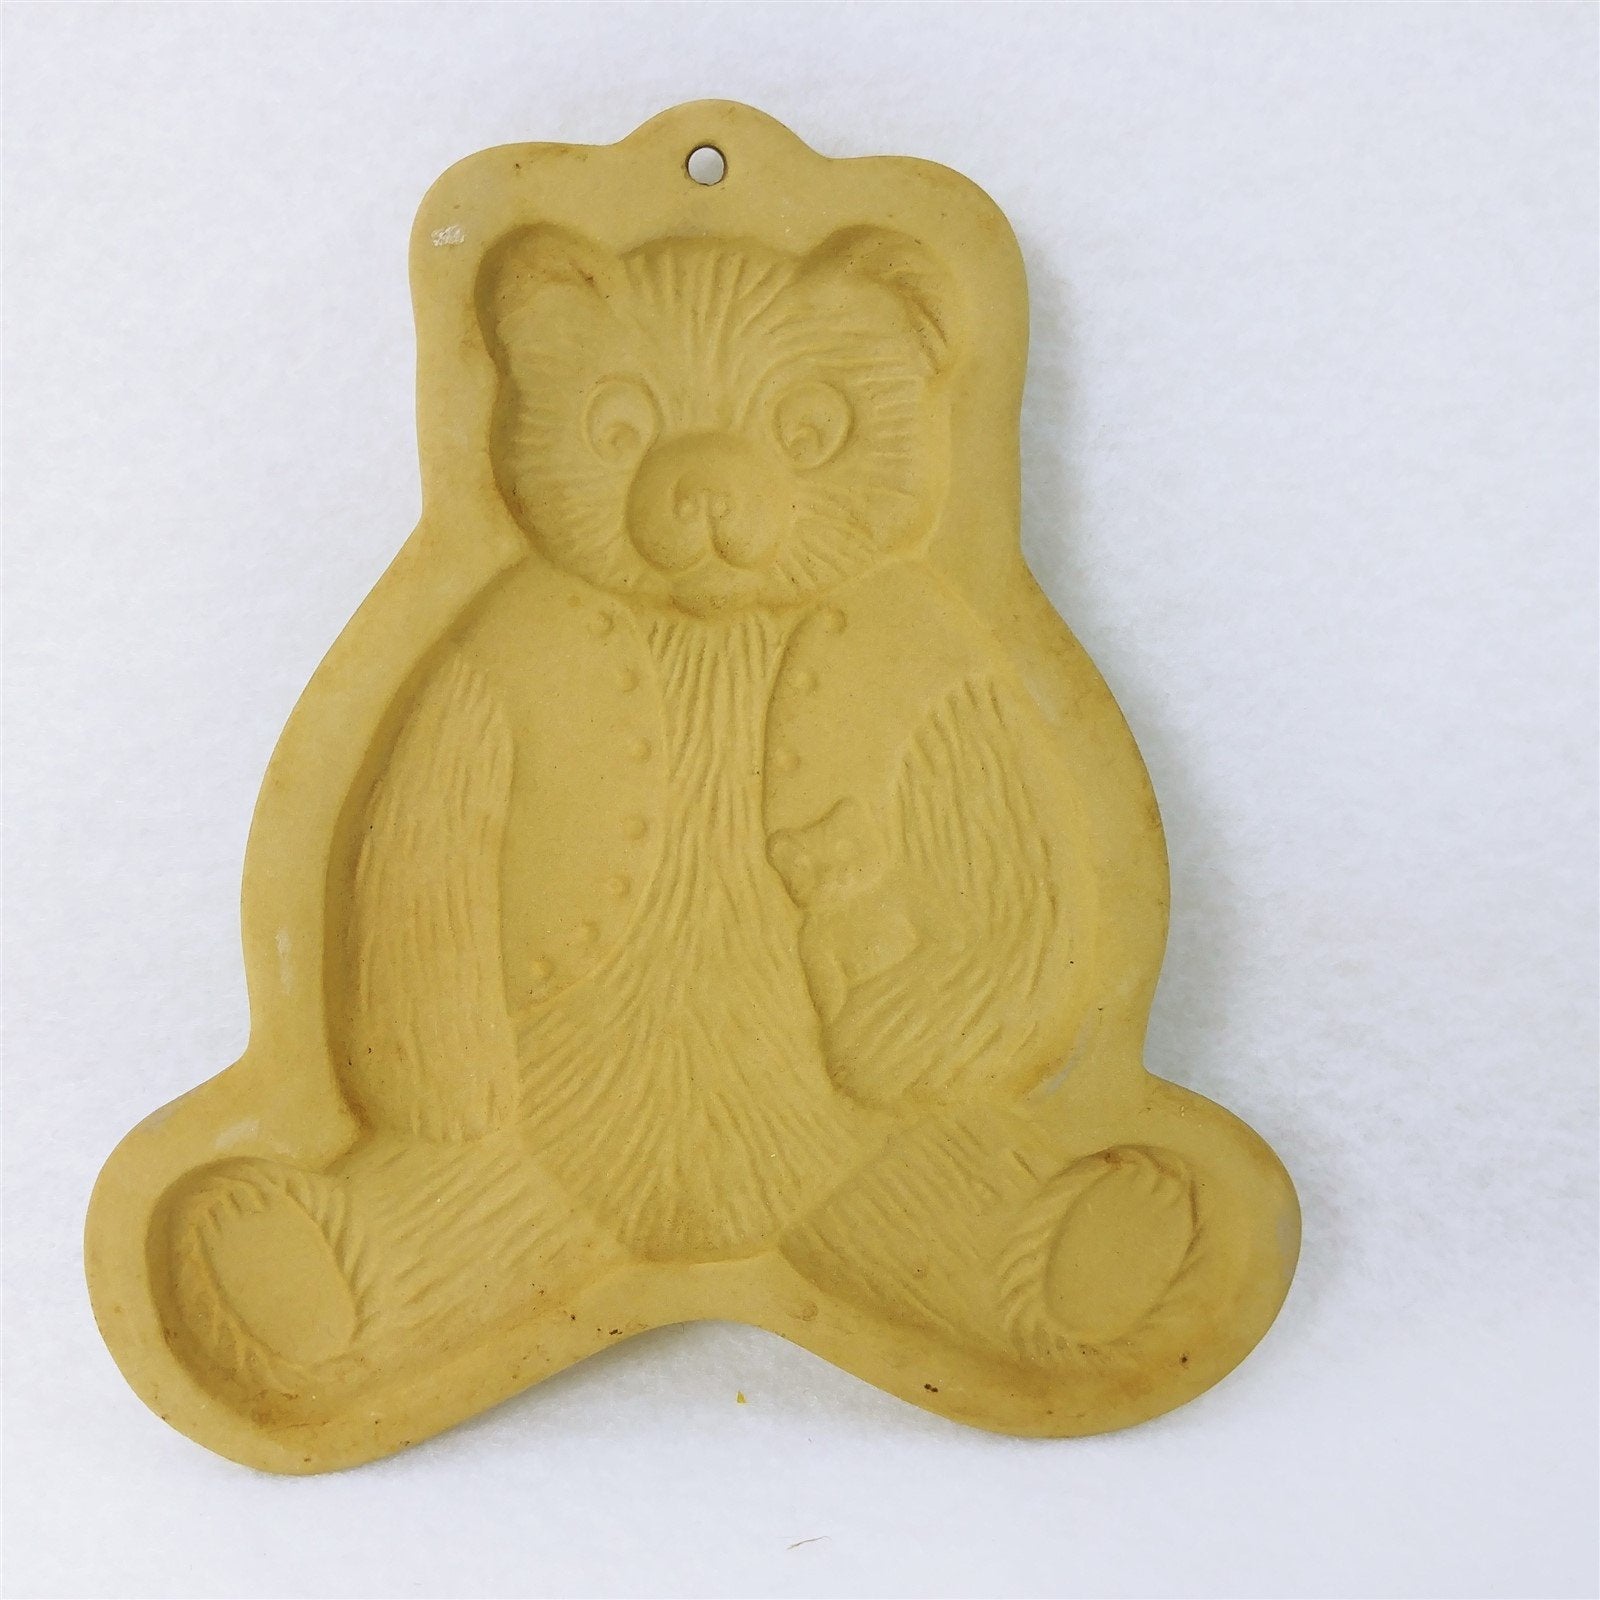 Cookie Mold Brown Bag Cookie Art Teddy Bear 1984